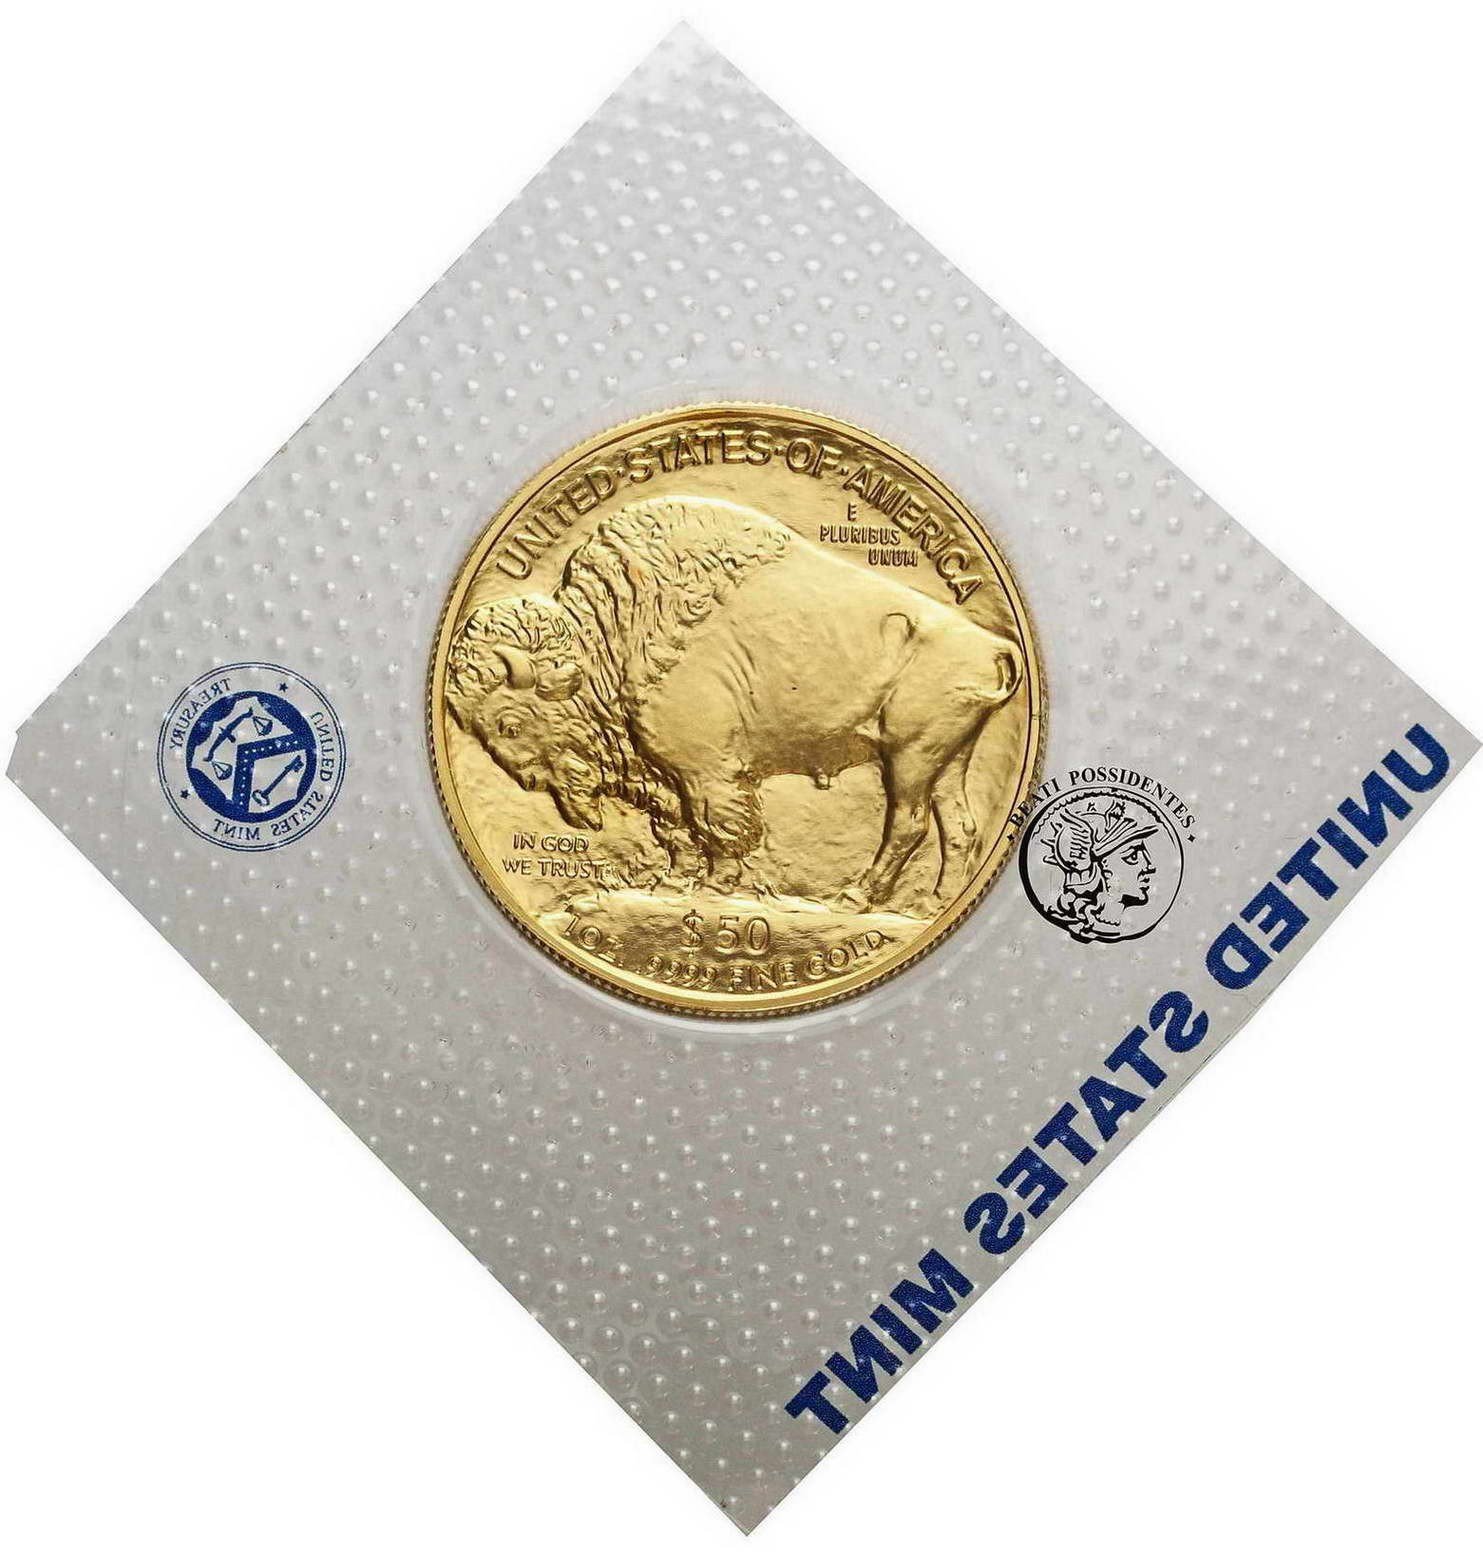 USA 50 dolarów 2008 Buffalo bizon (uncja złota) st.1